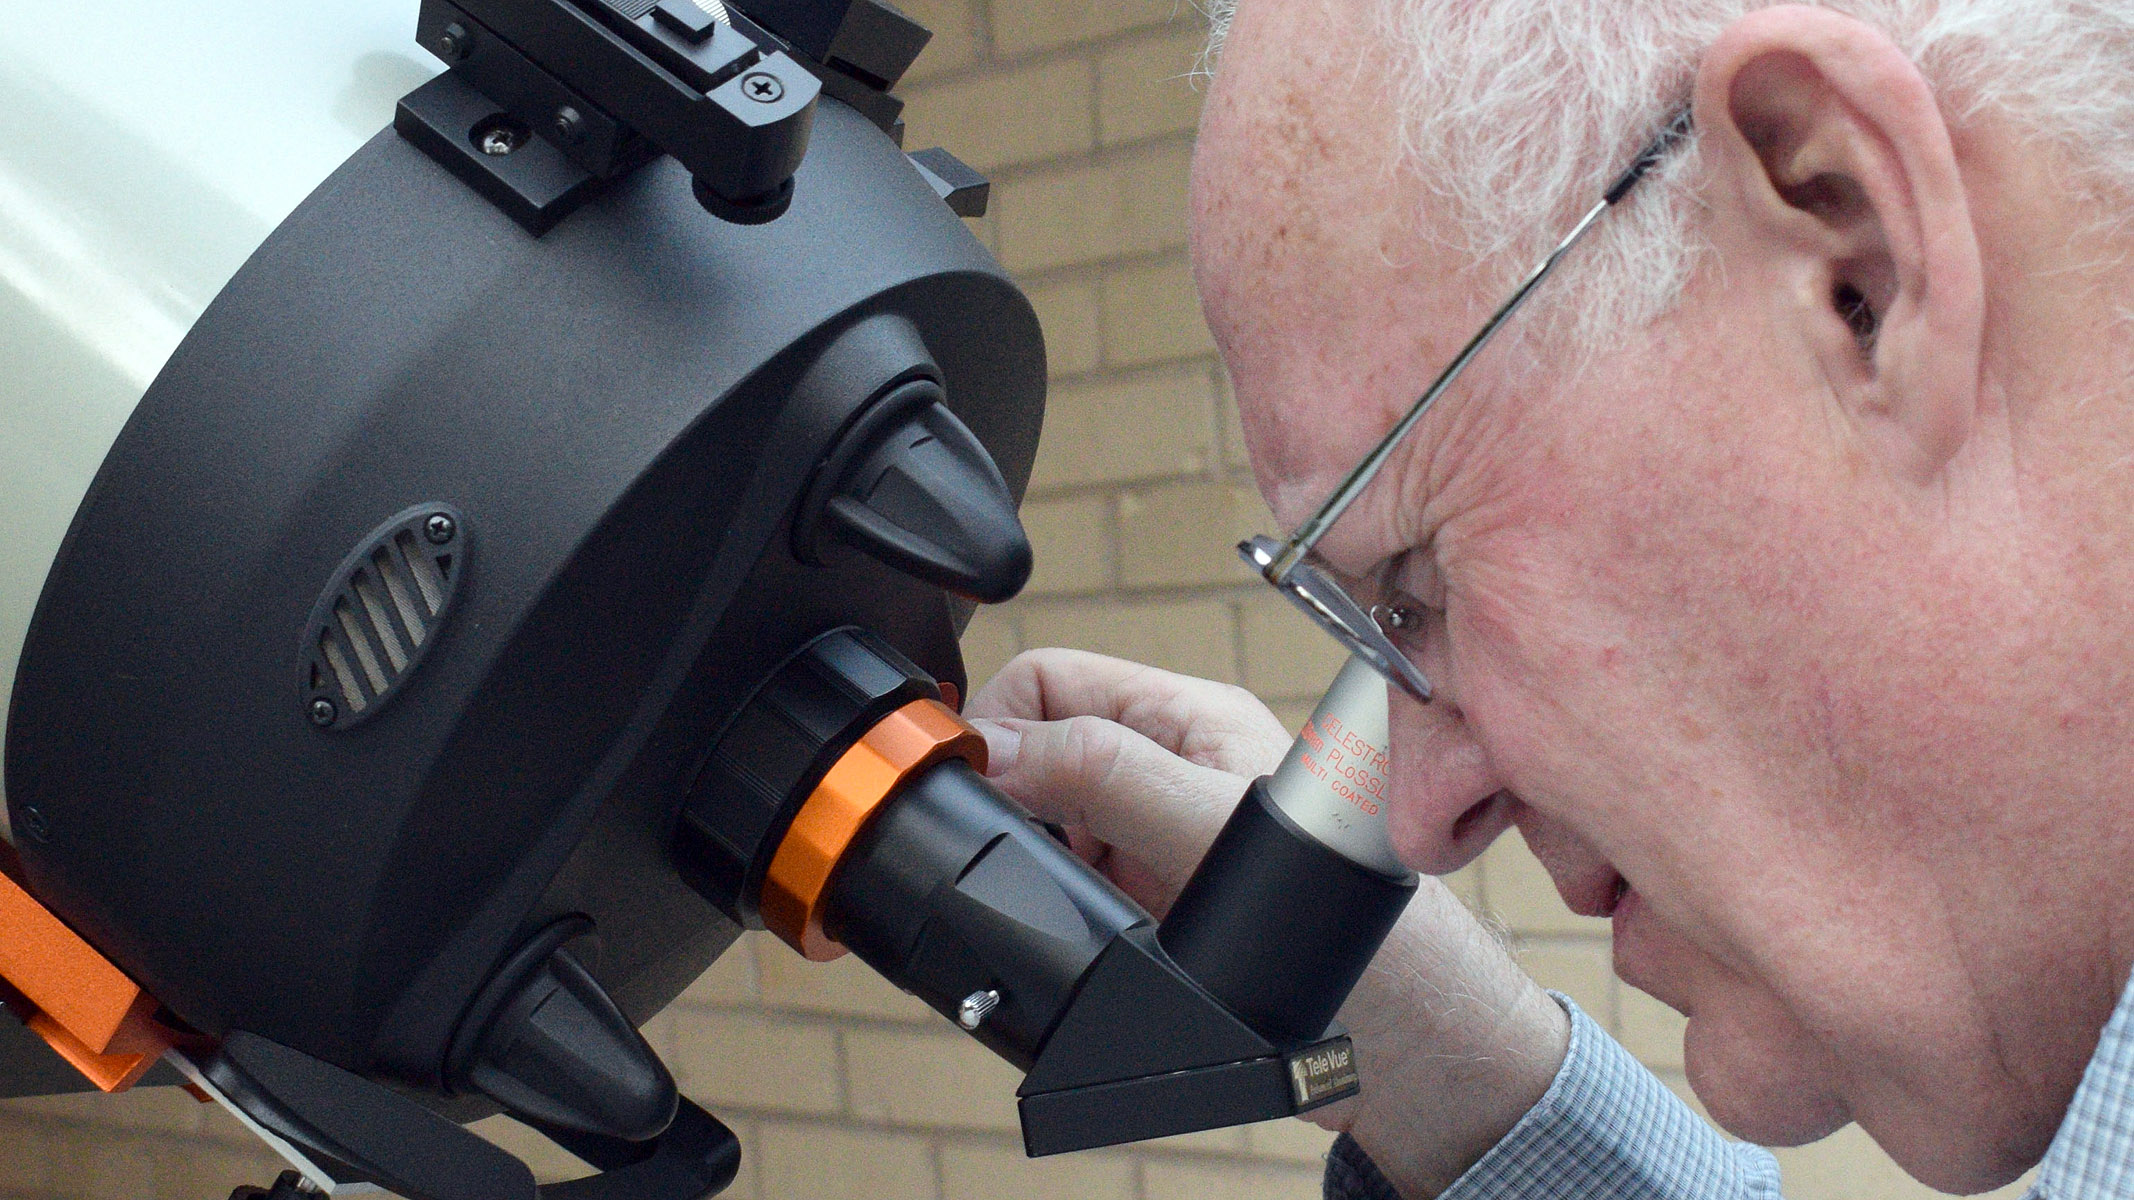 Autor mirando a través del ocular del telescopio avanzado de Celestron